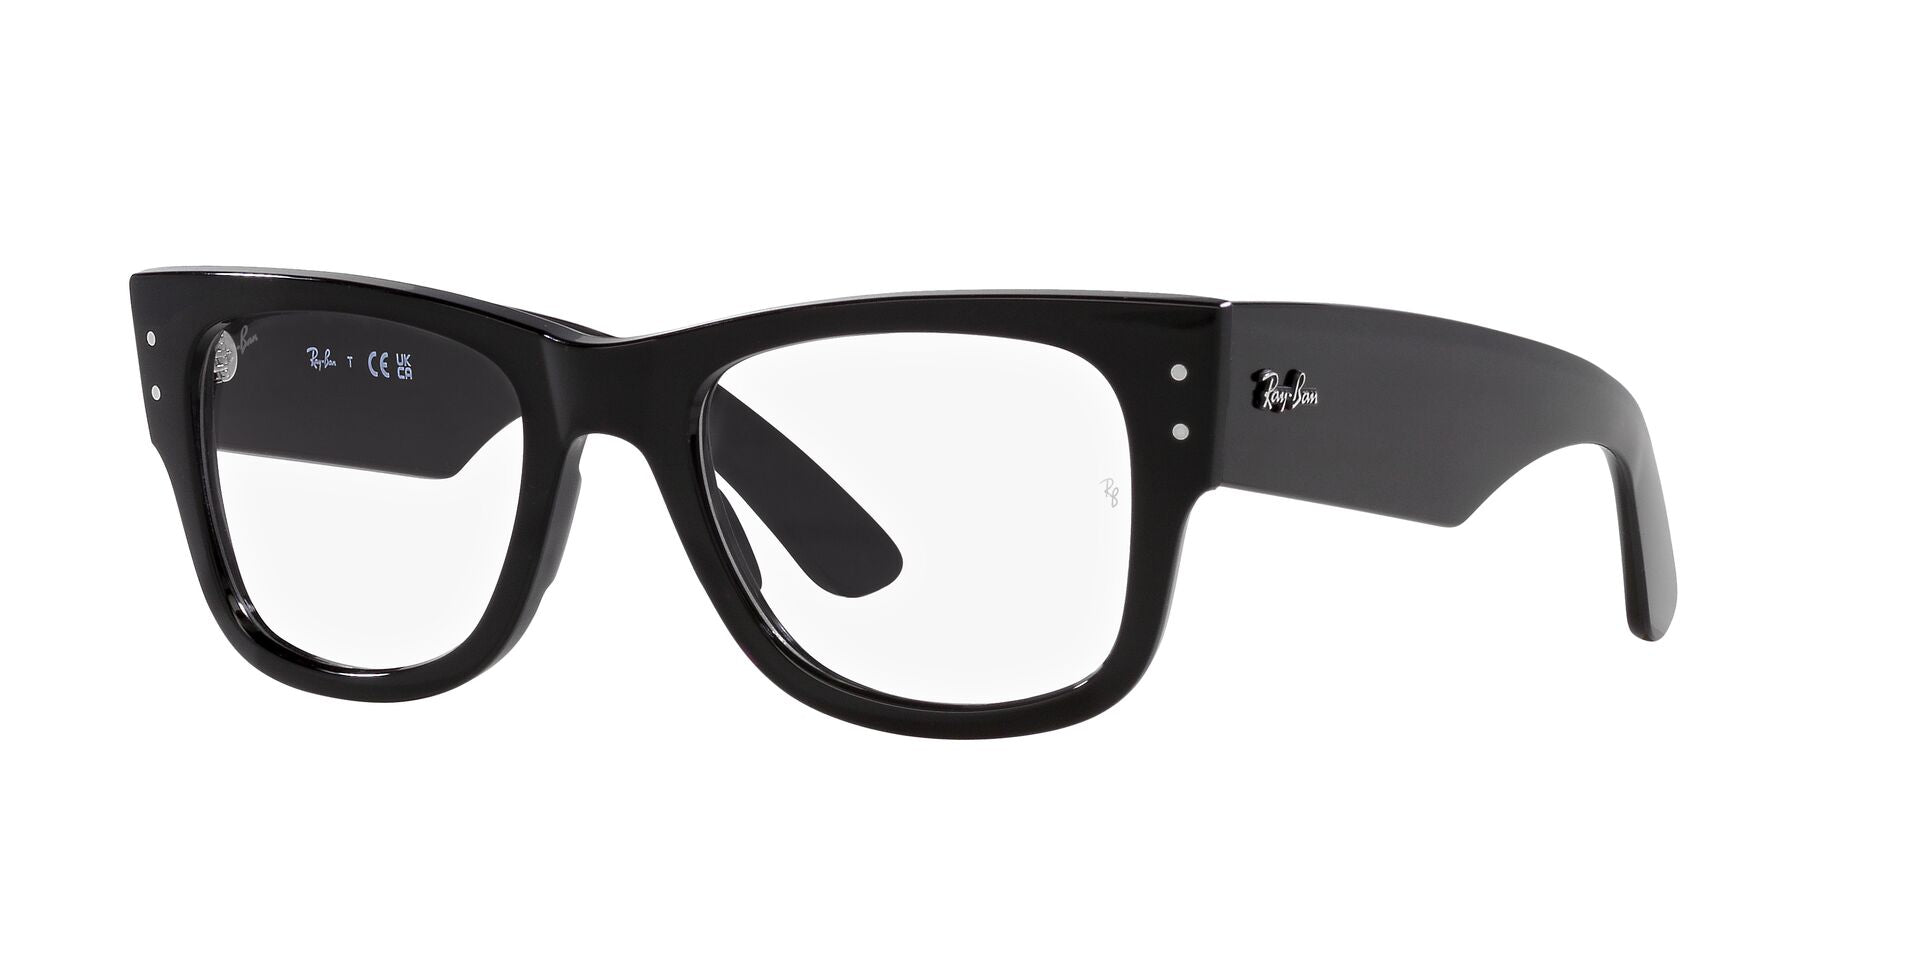 Prescription Eyeglasses for Men » Buy Online